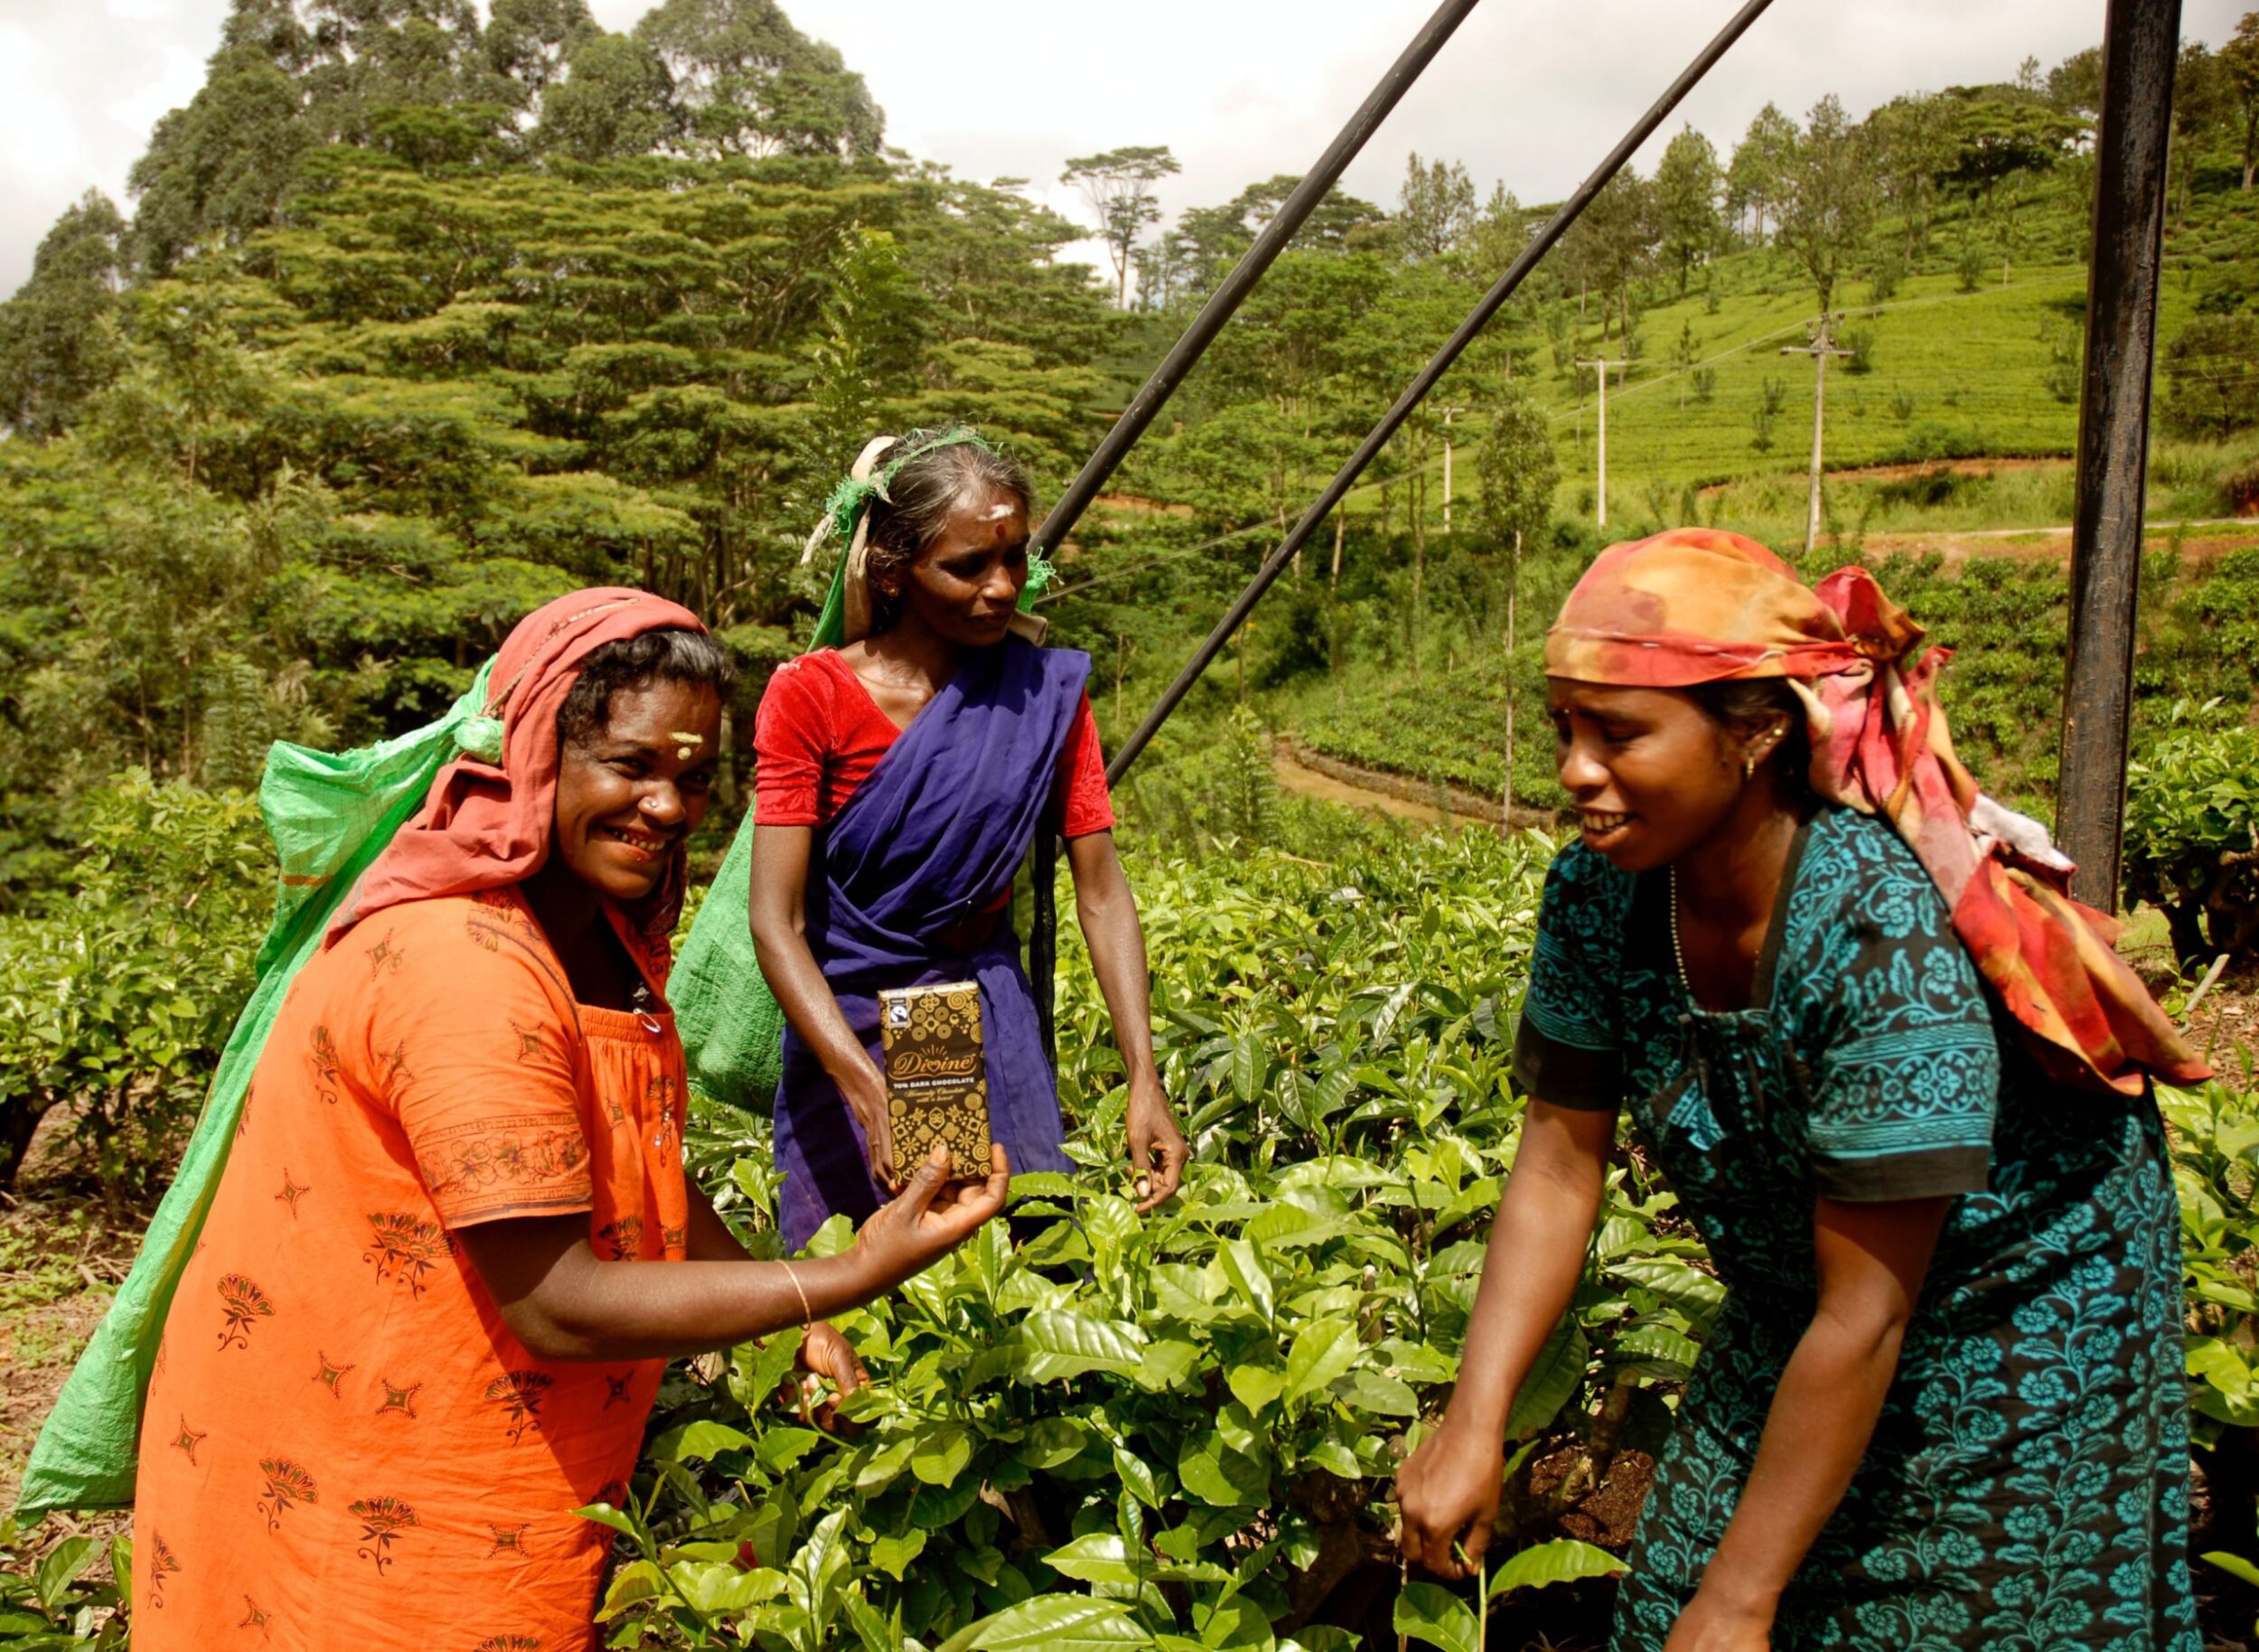 Harvesting tea in Sri Lanka